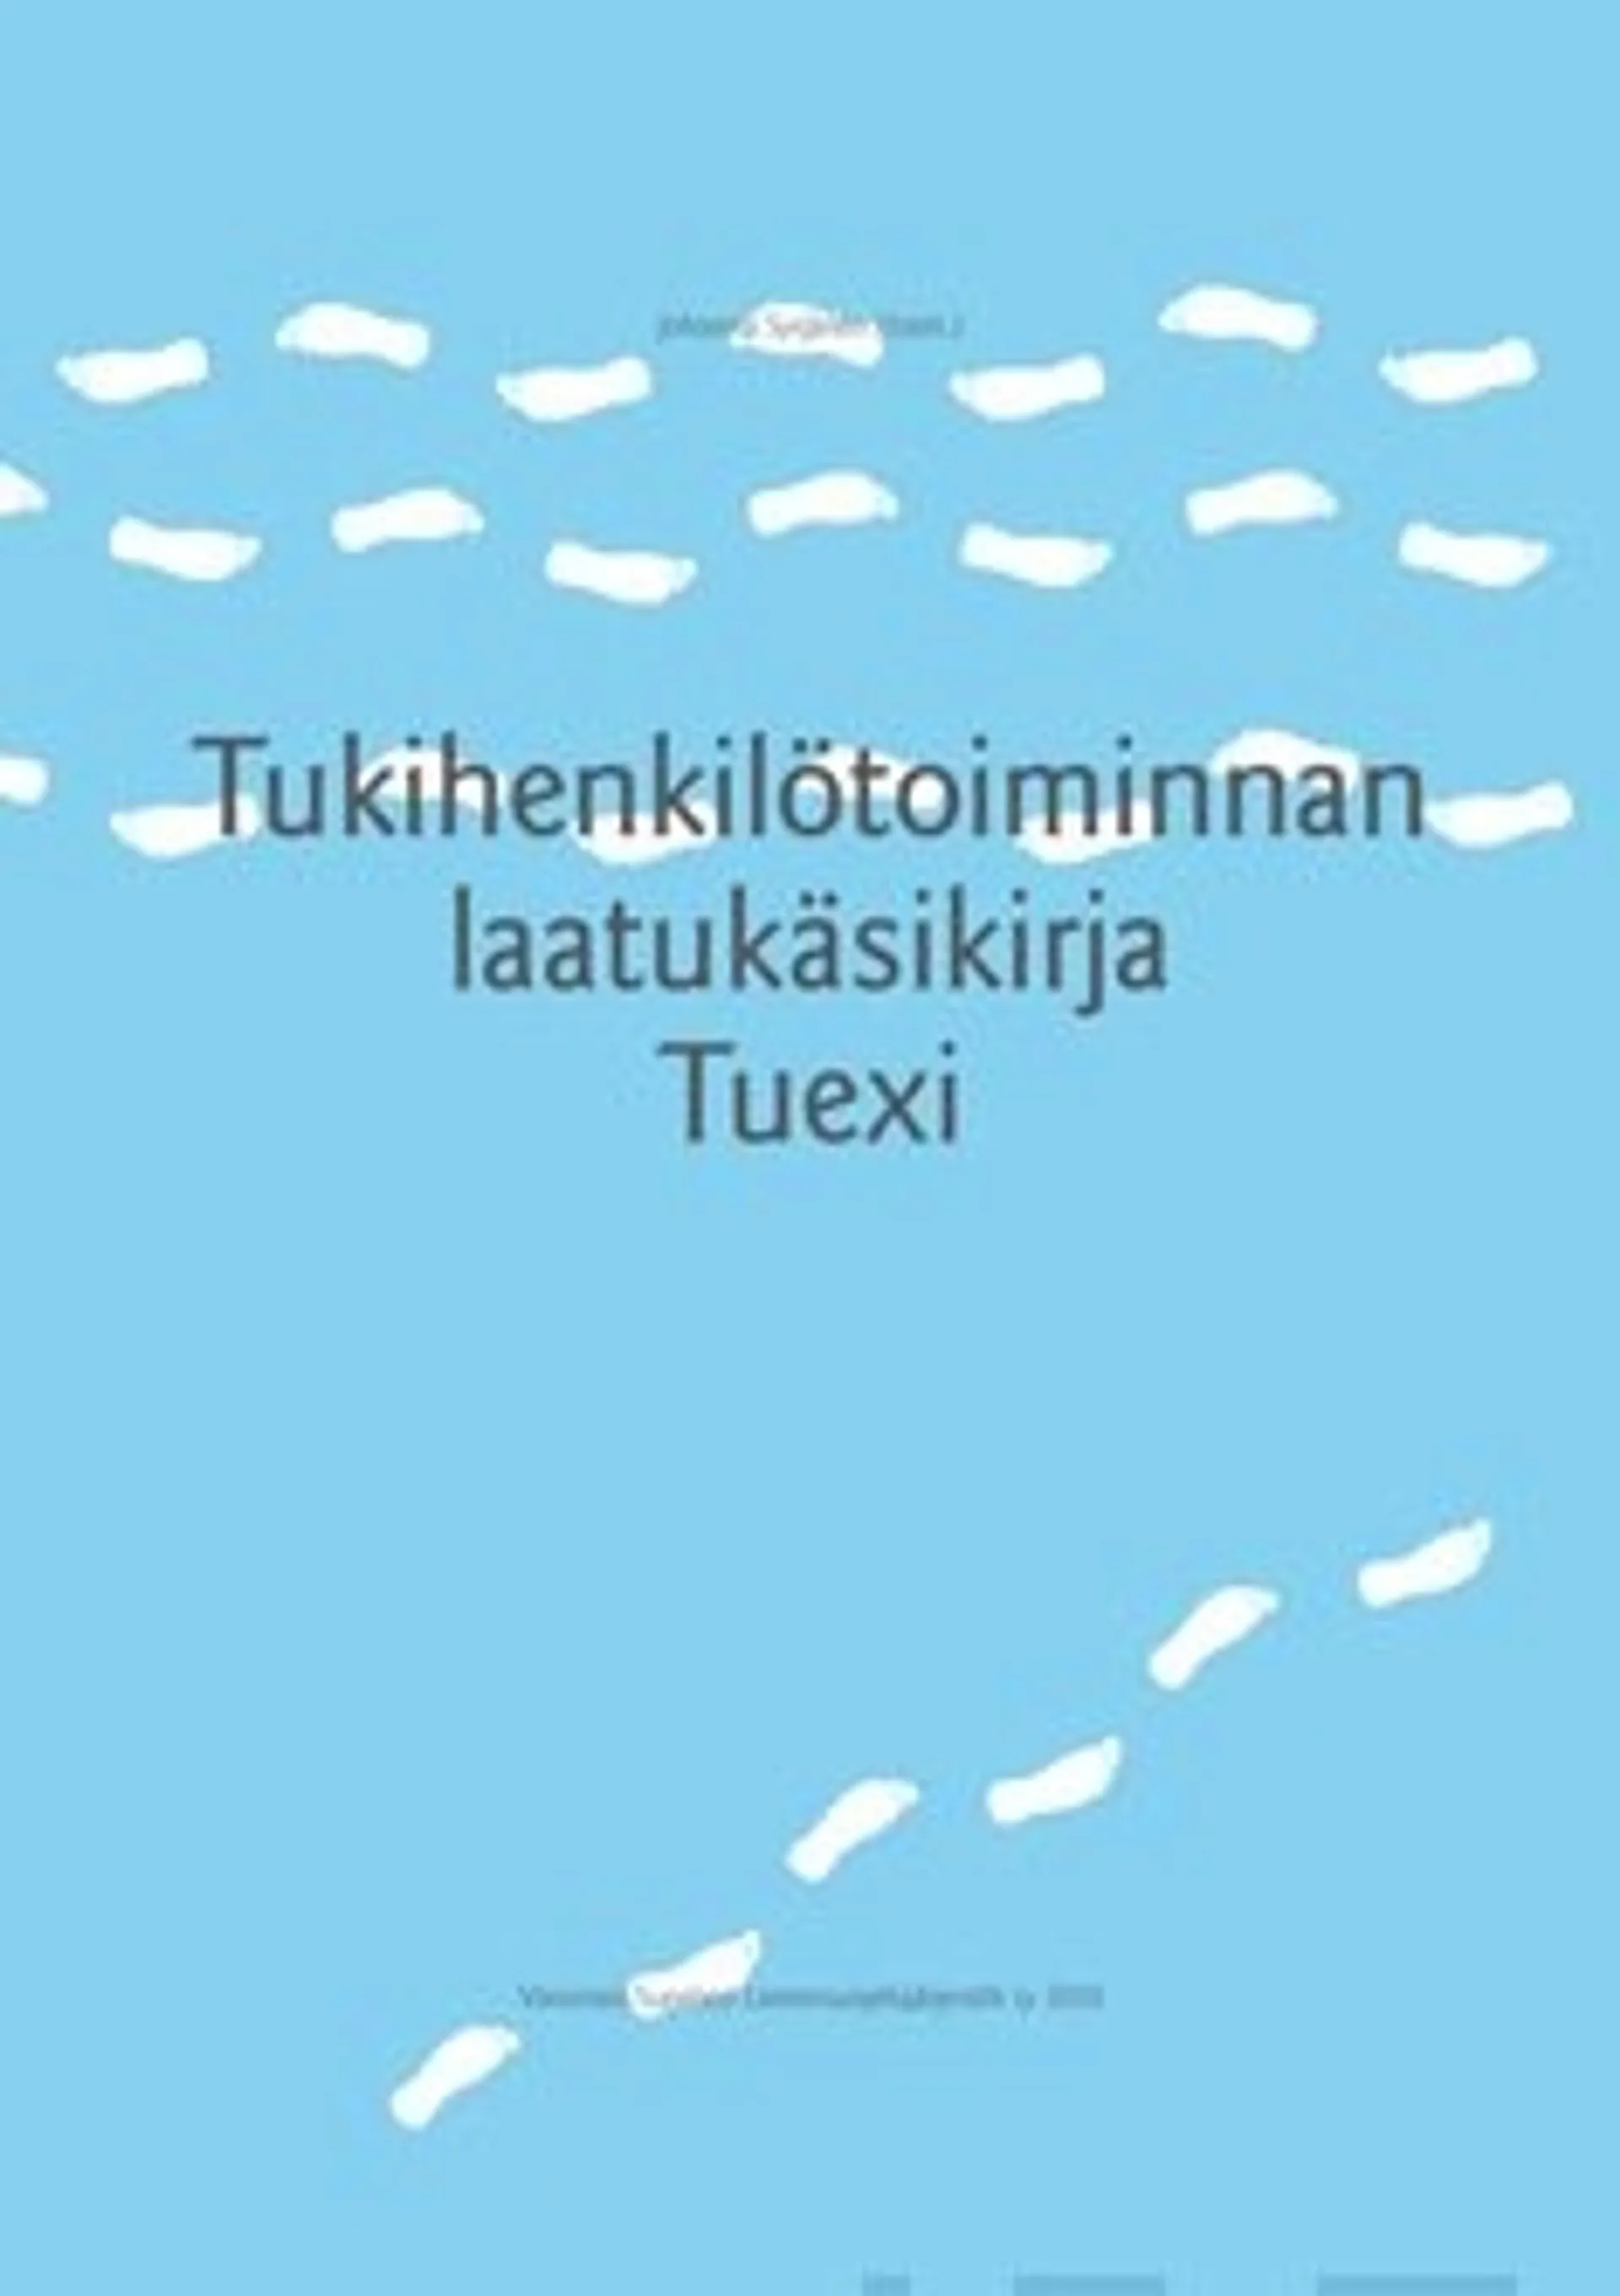 Tukihenkilötoiminnan laatukäsikirja Tuexi